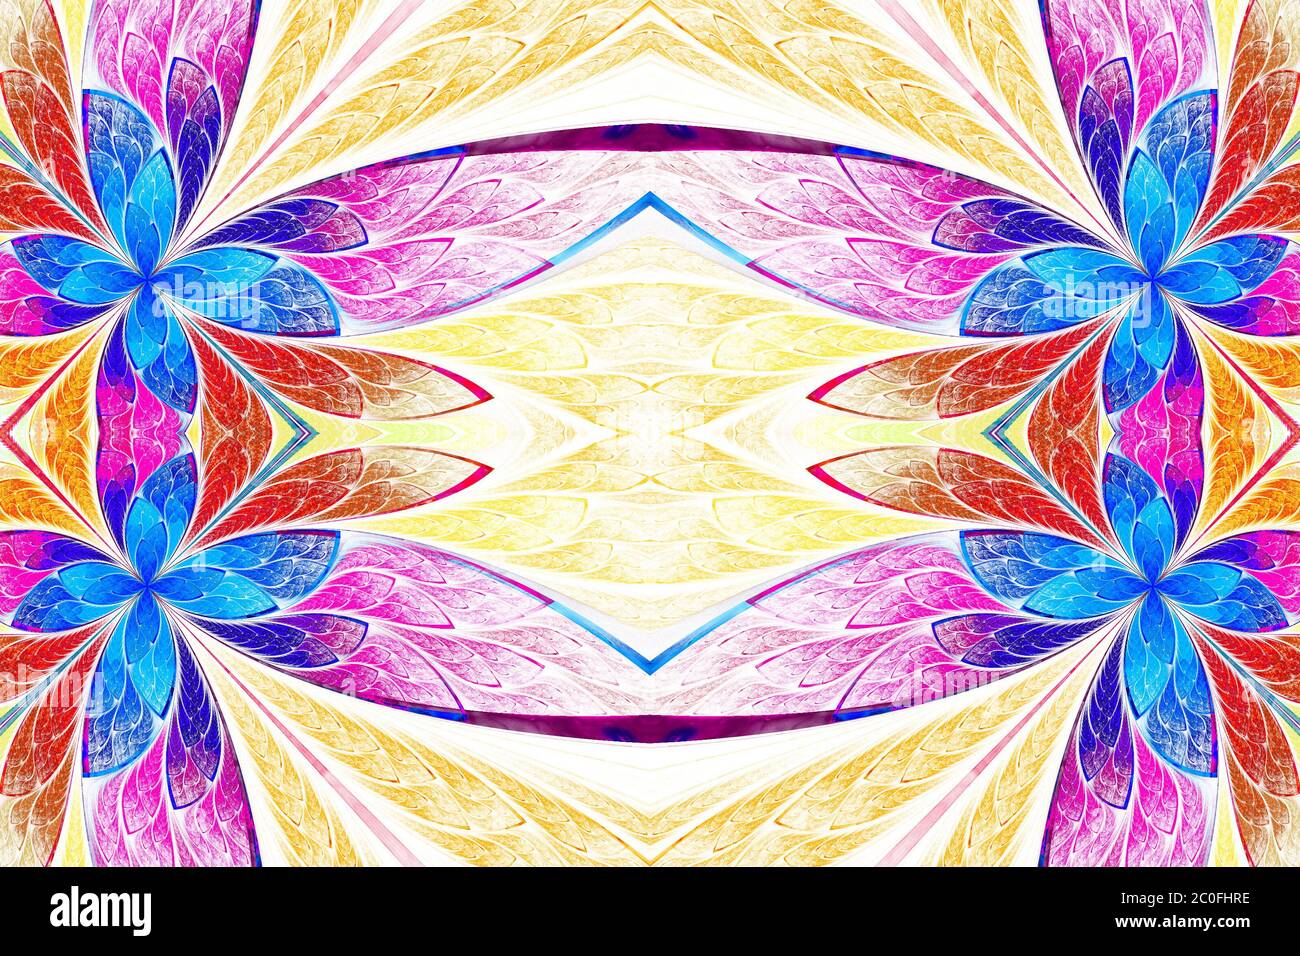 Motif floral symétrique en vitraux sur la lumière. Palette de couleurs bleu, rose et beige. Graphiques générés par ordinateur. Banque D'Images